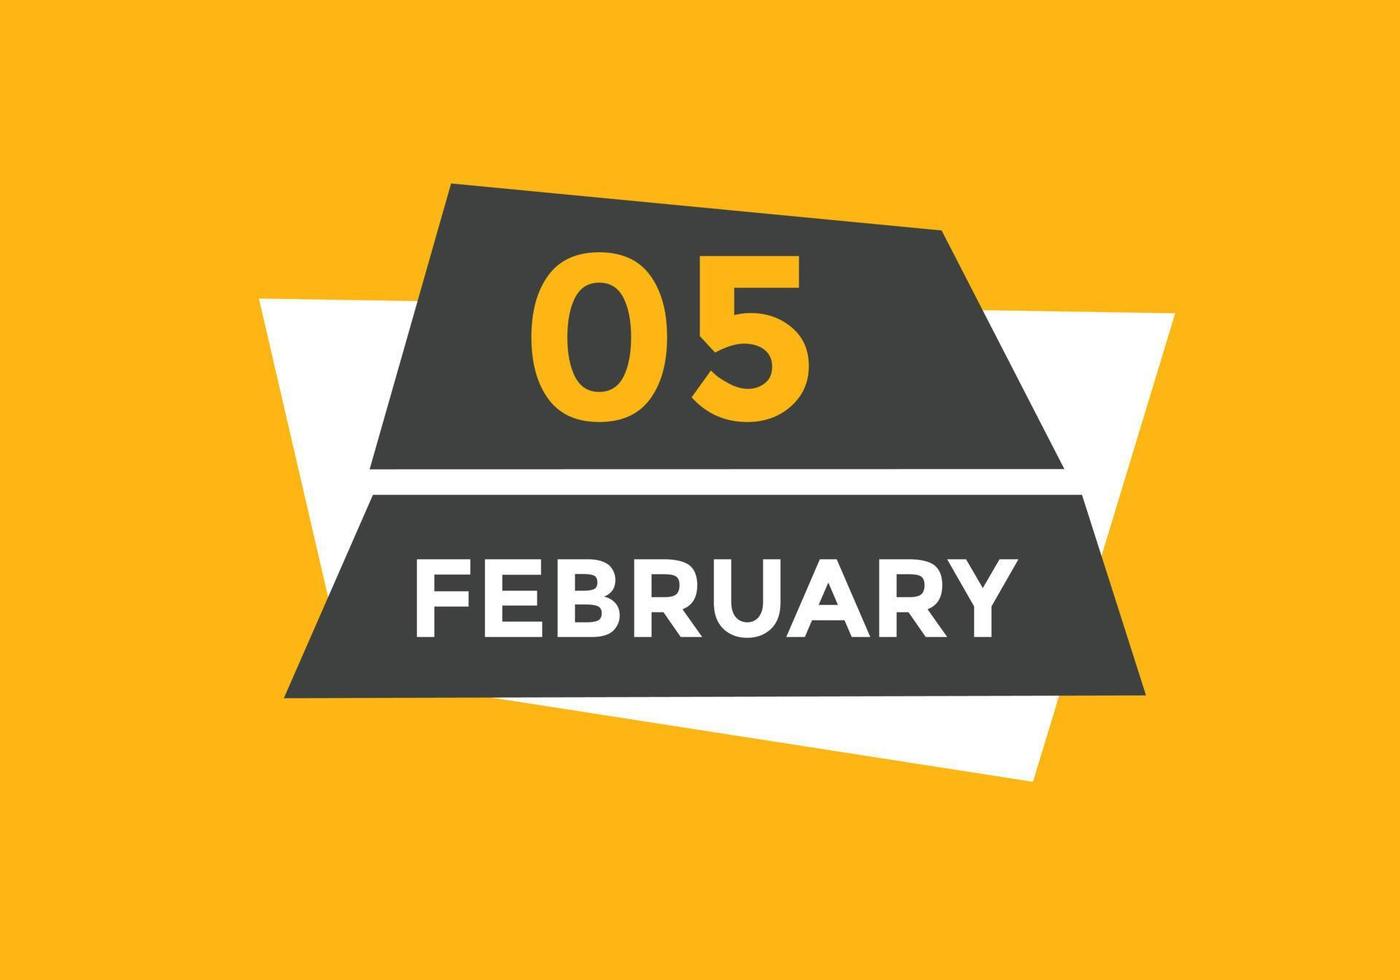 rappel du calendrier du 5 février. Modèle d'icône de calendrier quotidien du 5 février. modèle de conception d'icône calendrier 5 février. illustration vectorielle vecteur